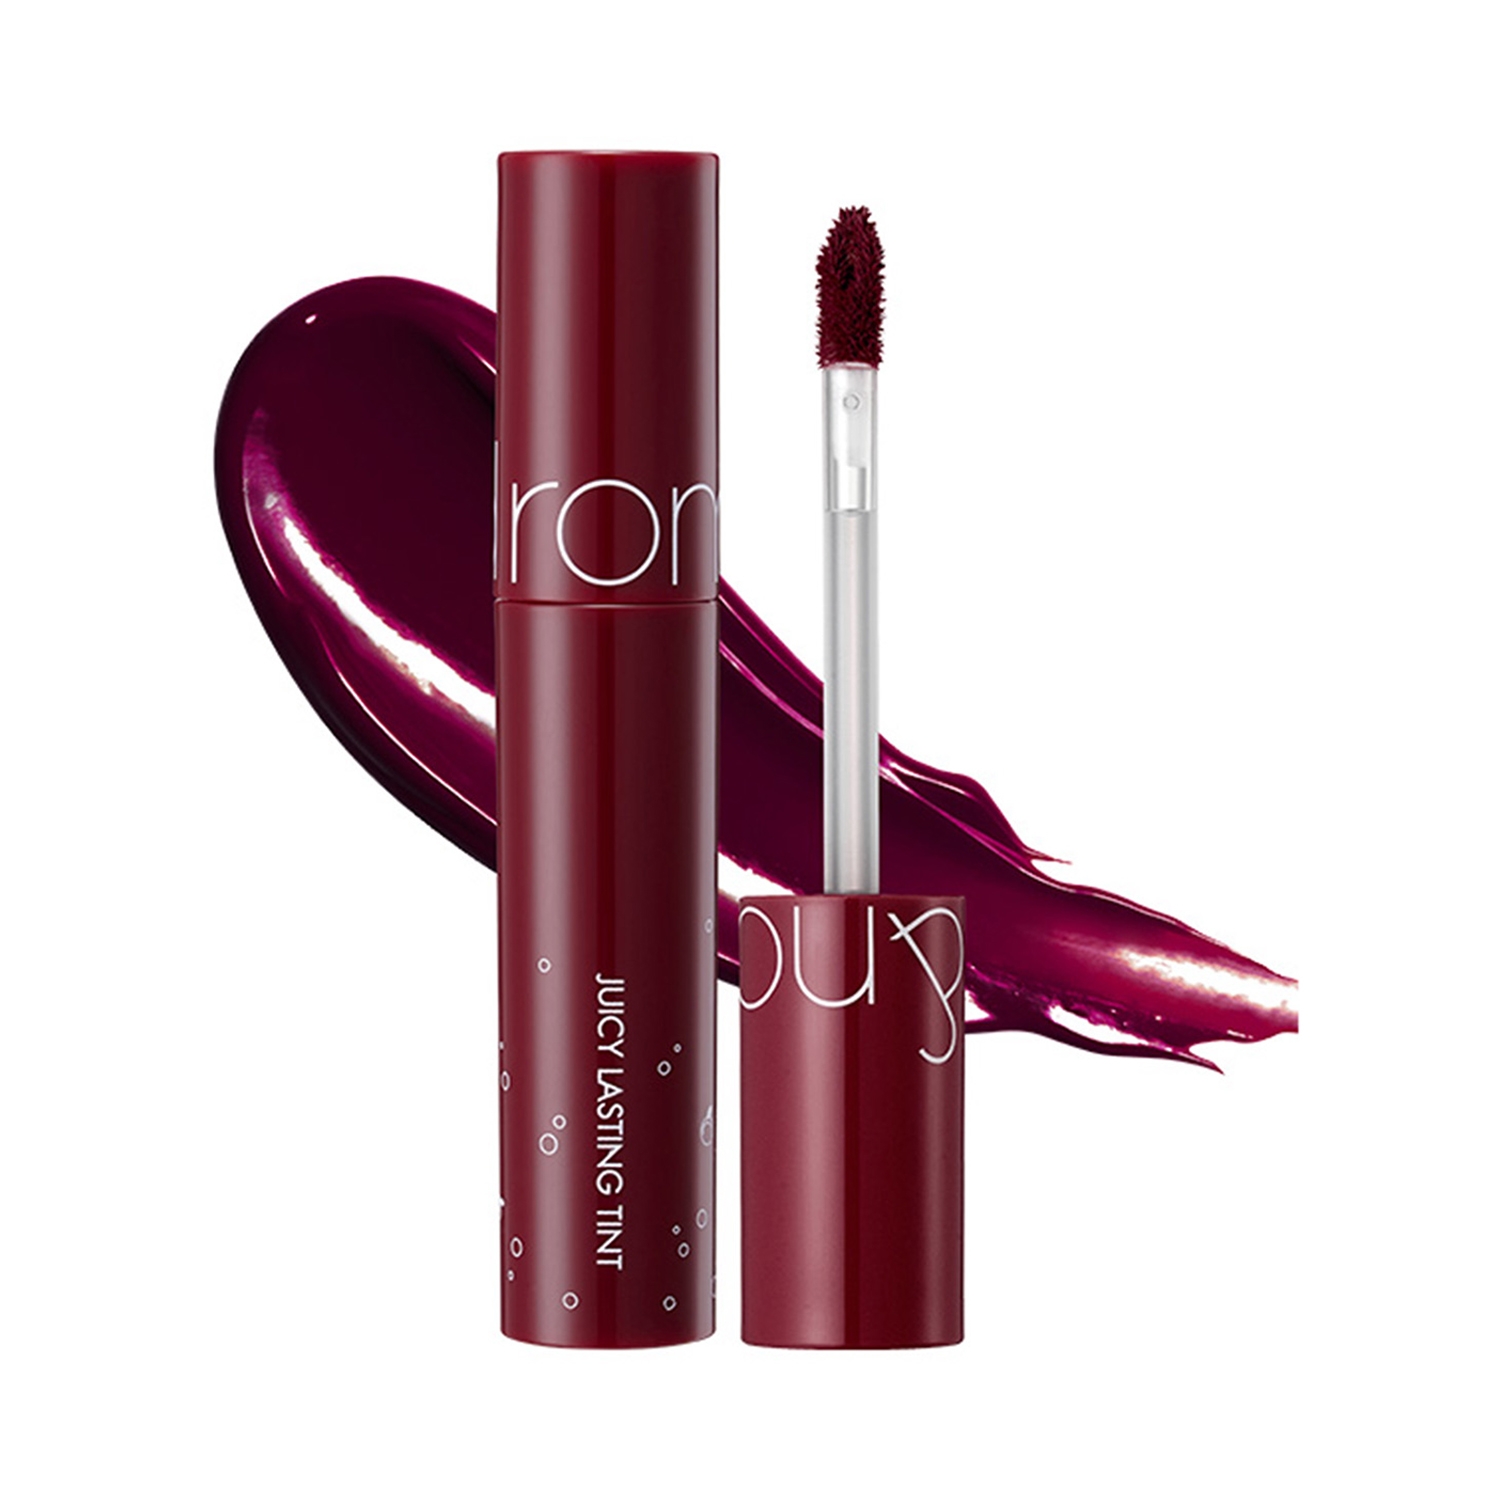 Buy Rom&nd Juicy Lasting Lip Tint, 21 Deep Sangria (5.5g) Online - Tira